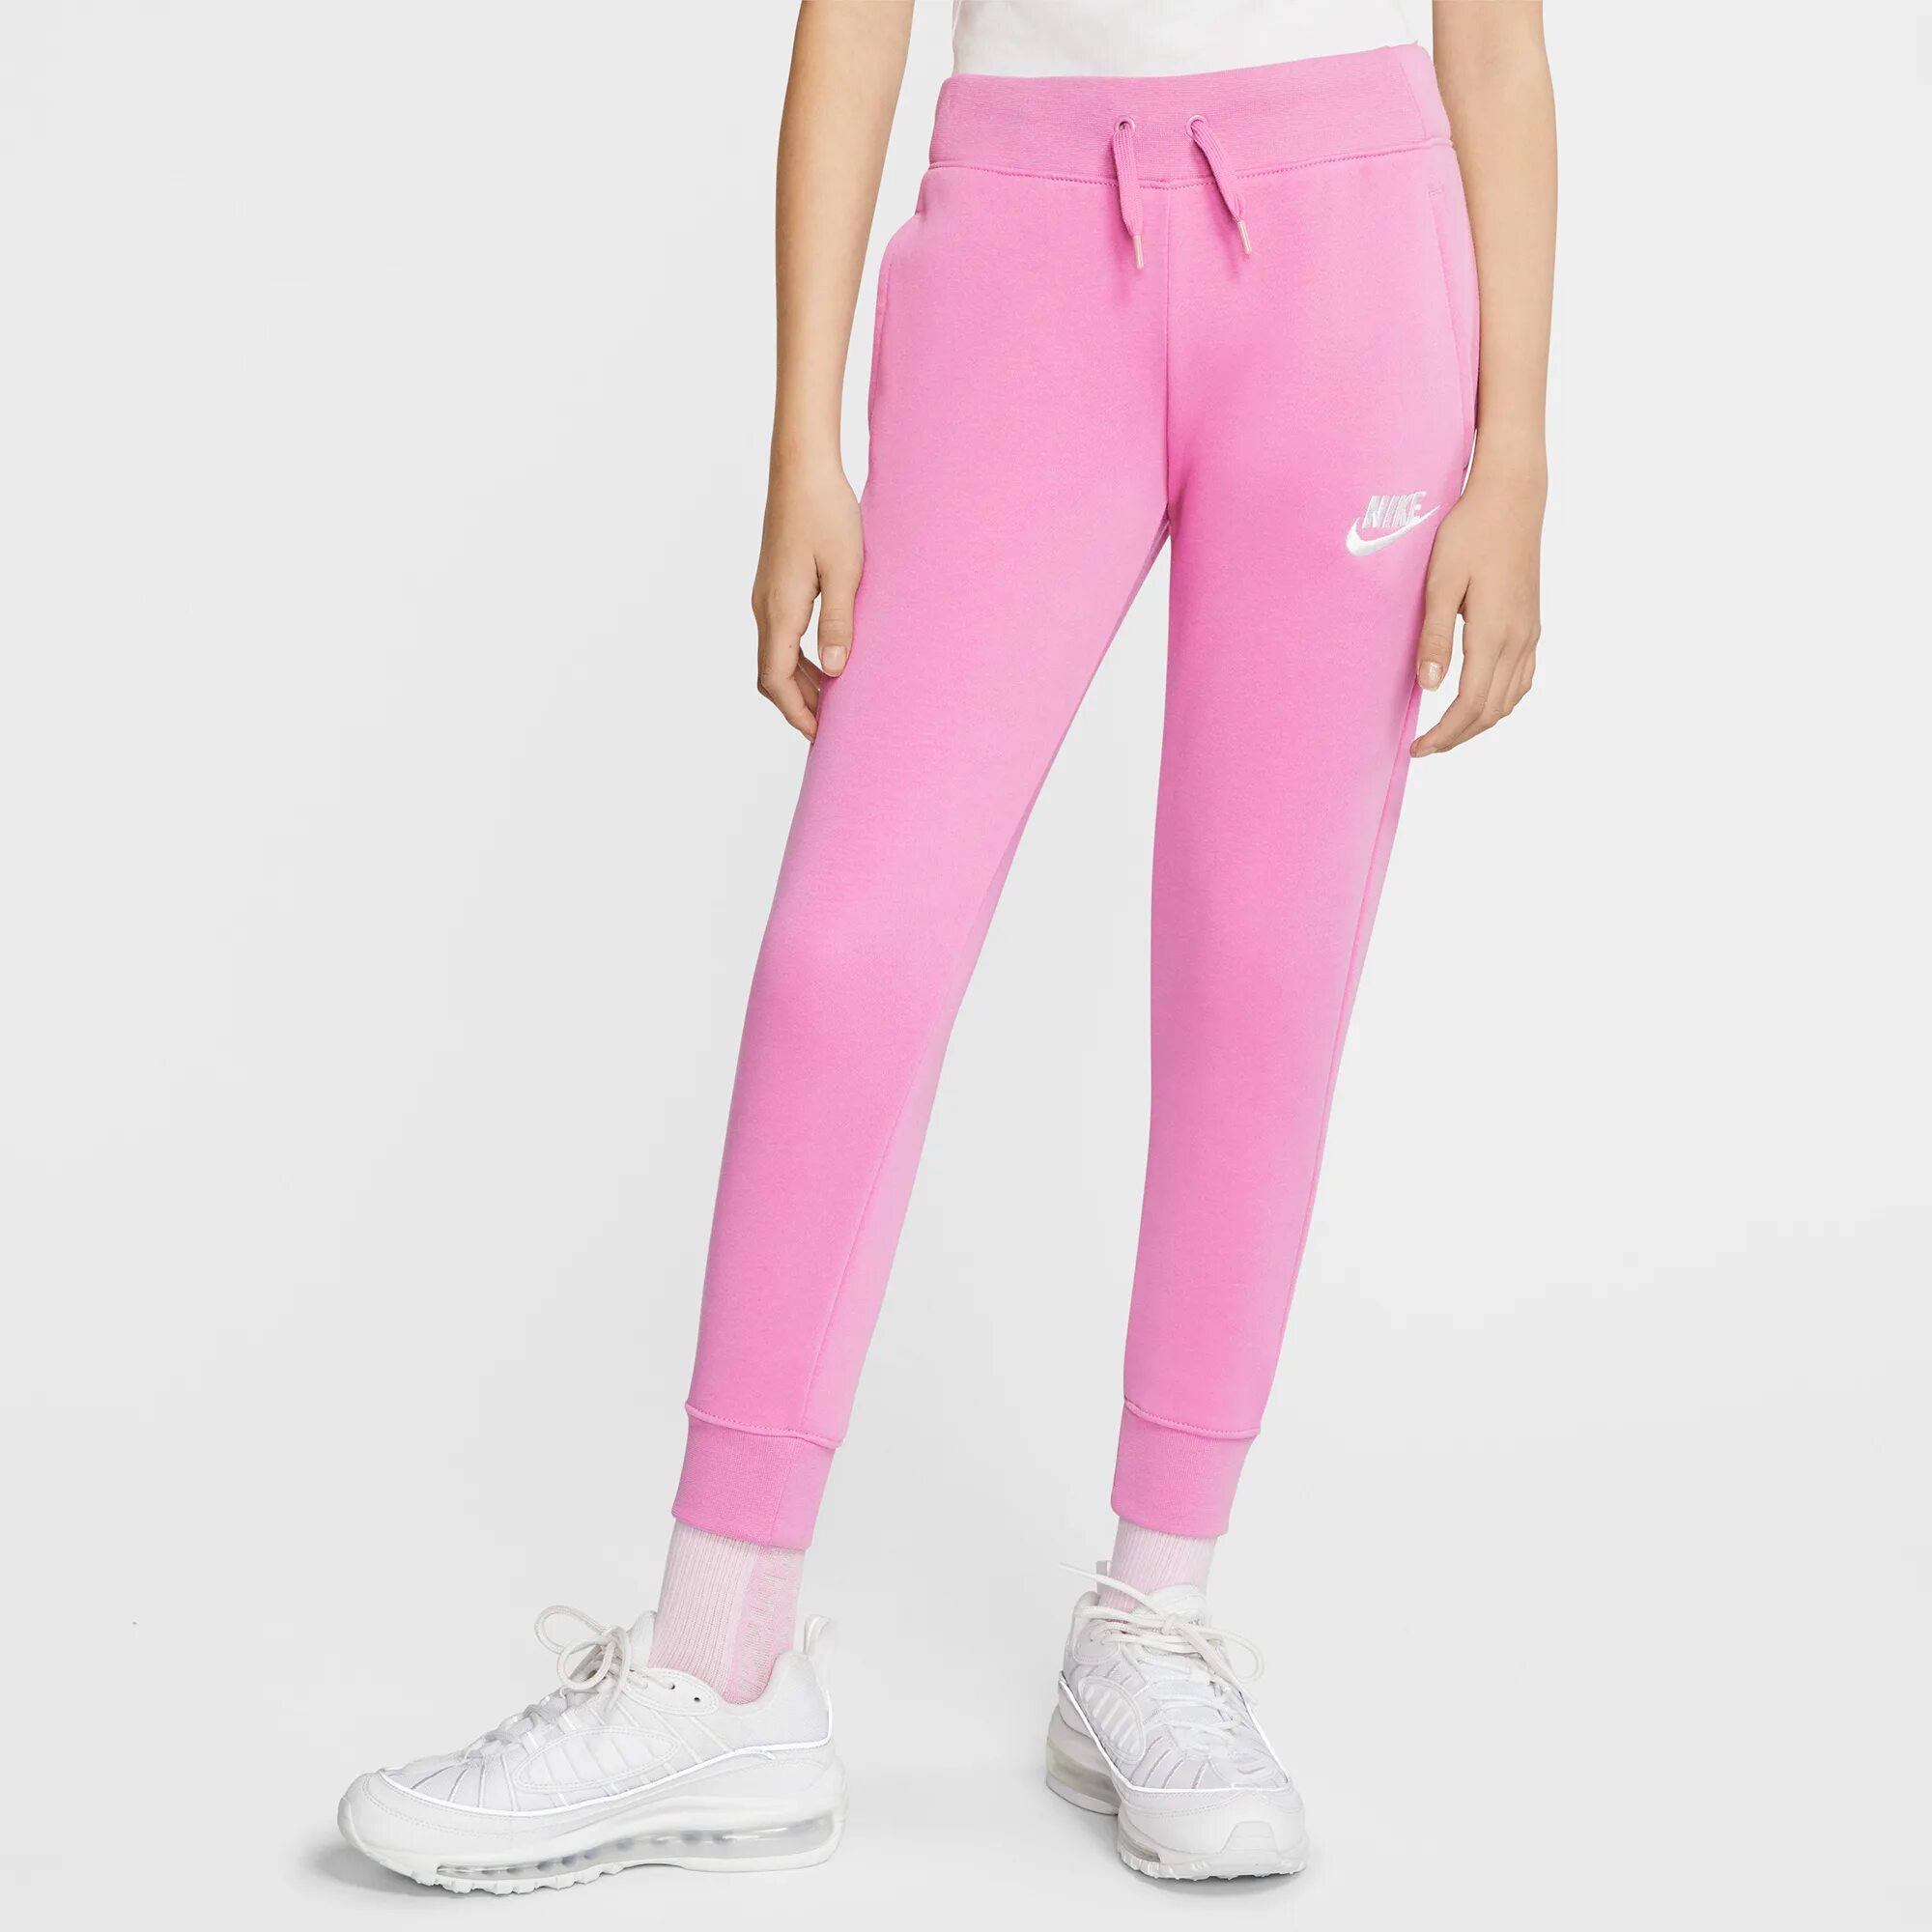 Плотные розовые. Спортивные розовые штаны найк 56323. Nike штаны фуксия. Nike Sportswear розовая штаны. Розовые штаны найк.